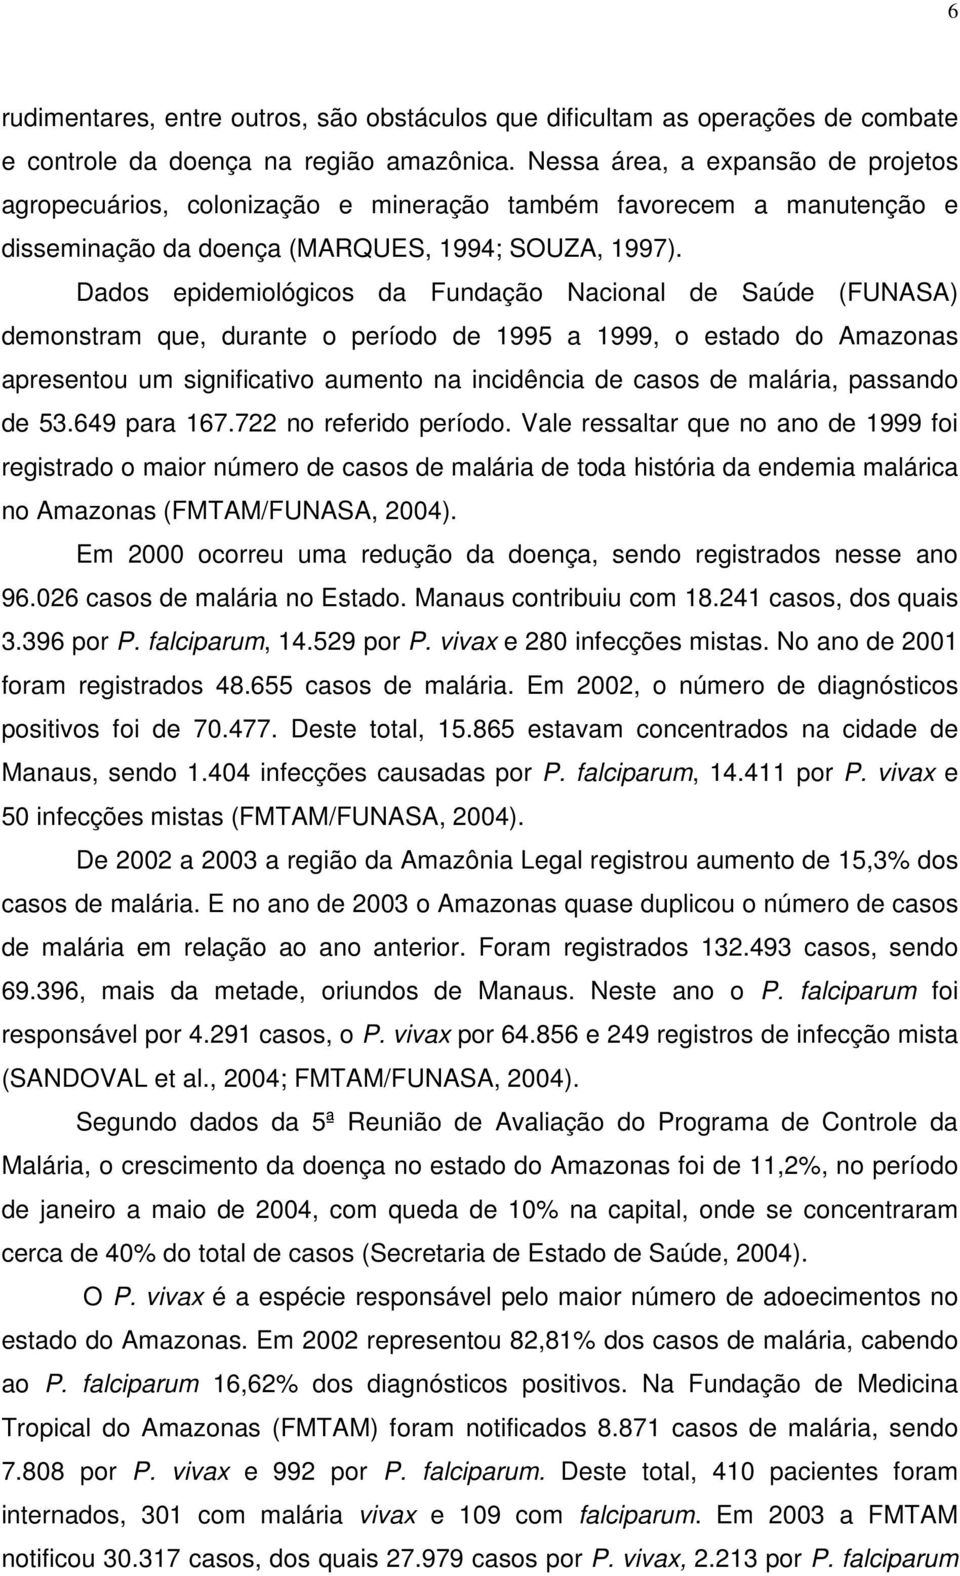 Dados epidemiológicos da Fundação Nacional de Saúde (FUNASA) demonstram que, durante o período de 1995 a 1999, o estado do Amazonas apresentou um significativo aumento na incidência de casos de